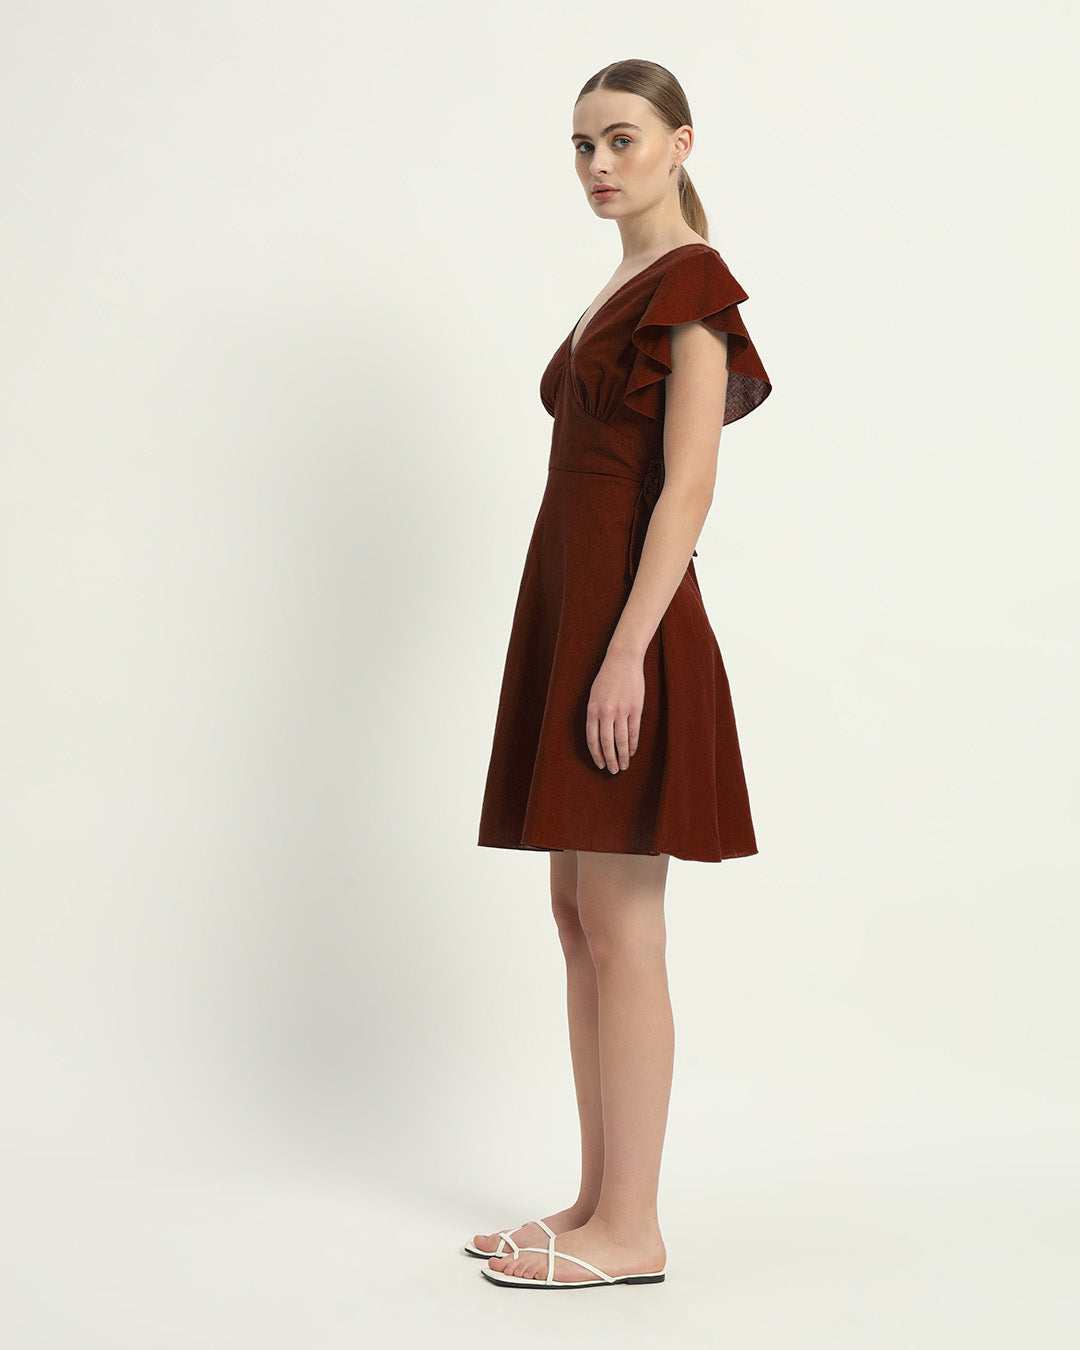 The Fairlie Rouge Cotton Dress